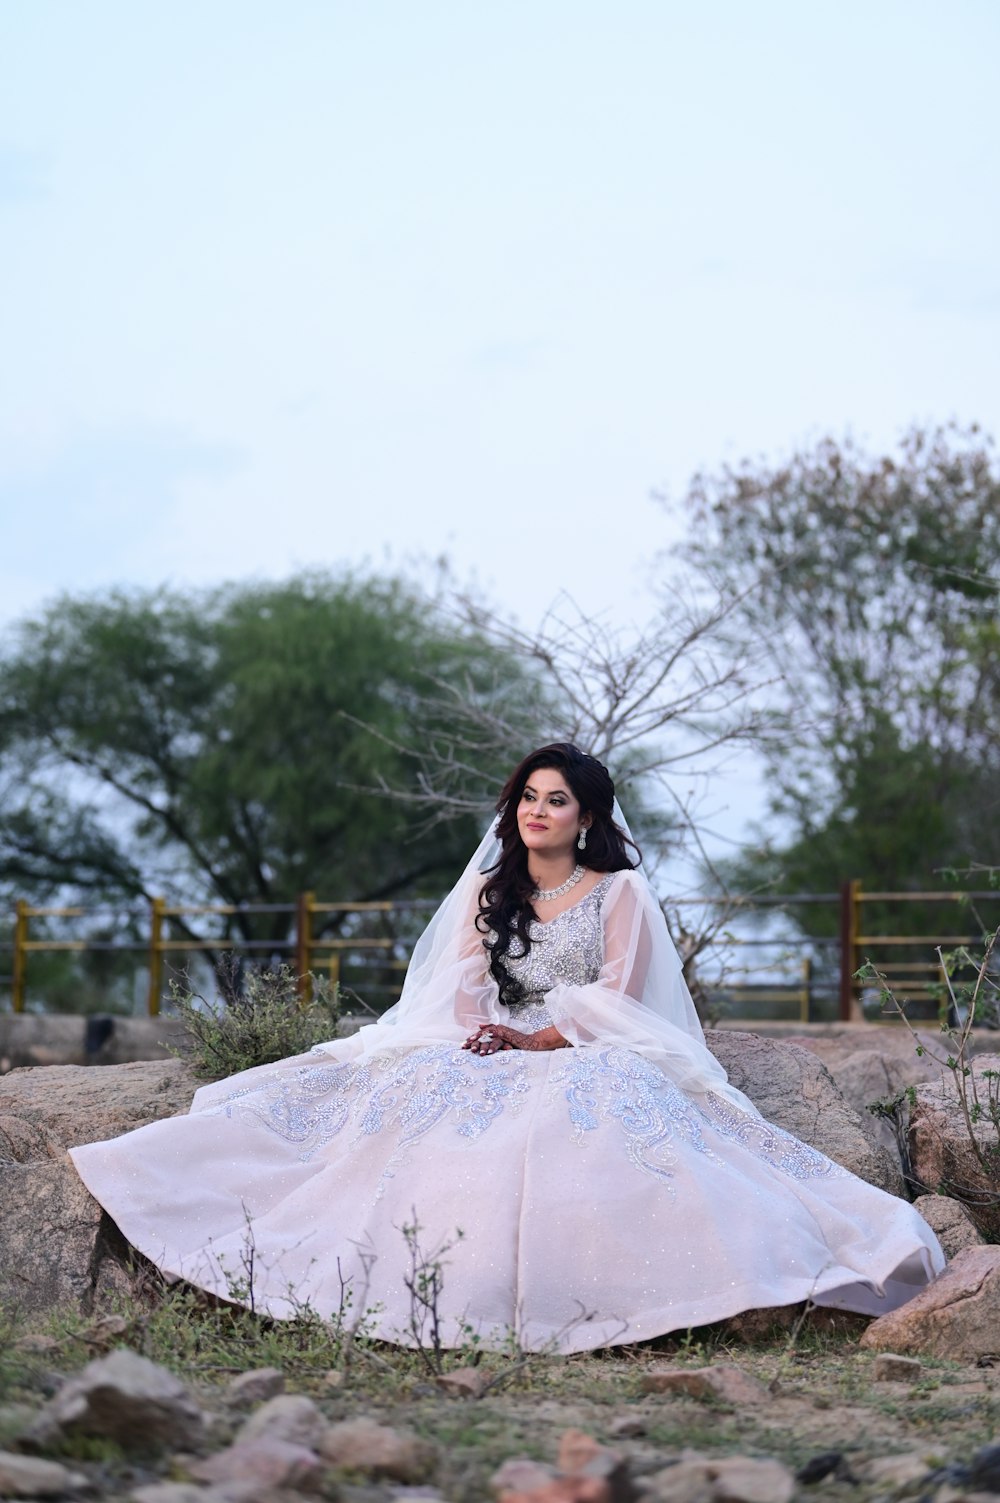 a woman in a wedding dress sitting on rocks